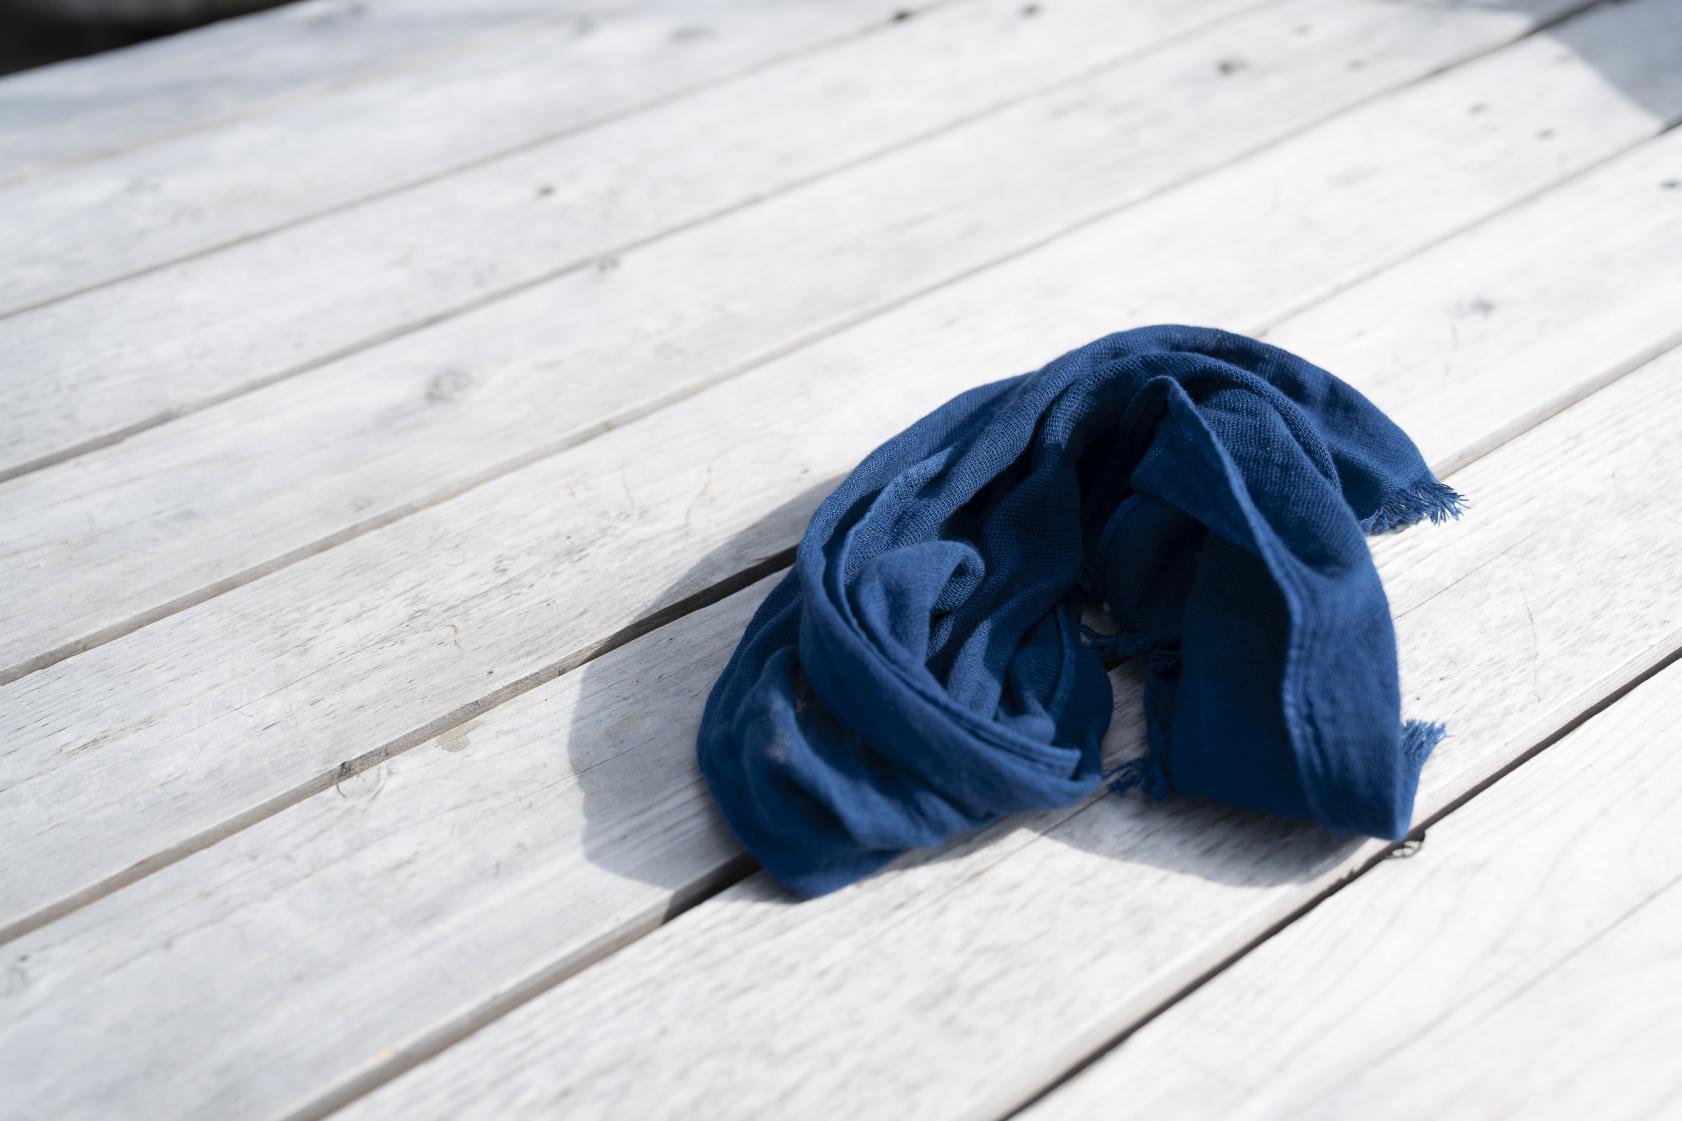 體驗傳統工藝的「藍染柔軟圍巾」-2